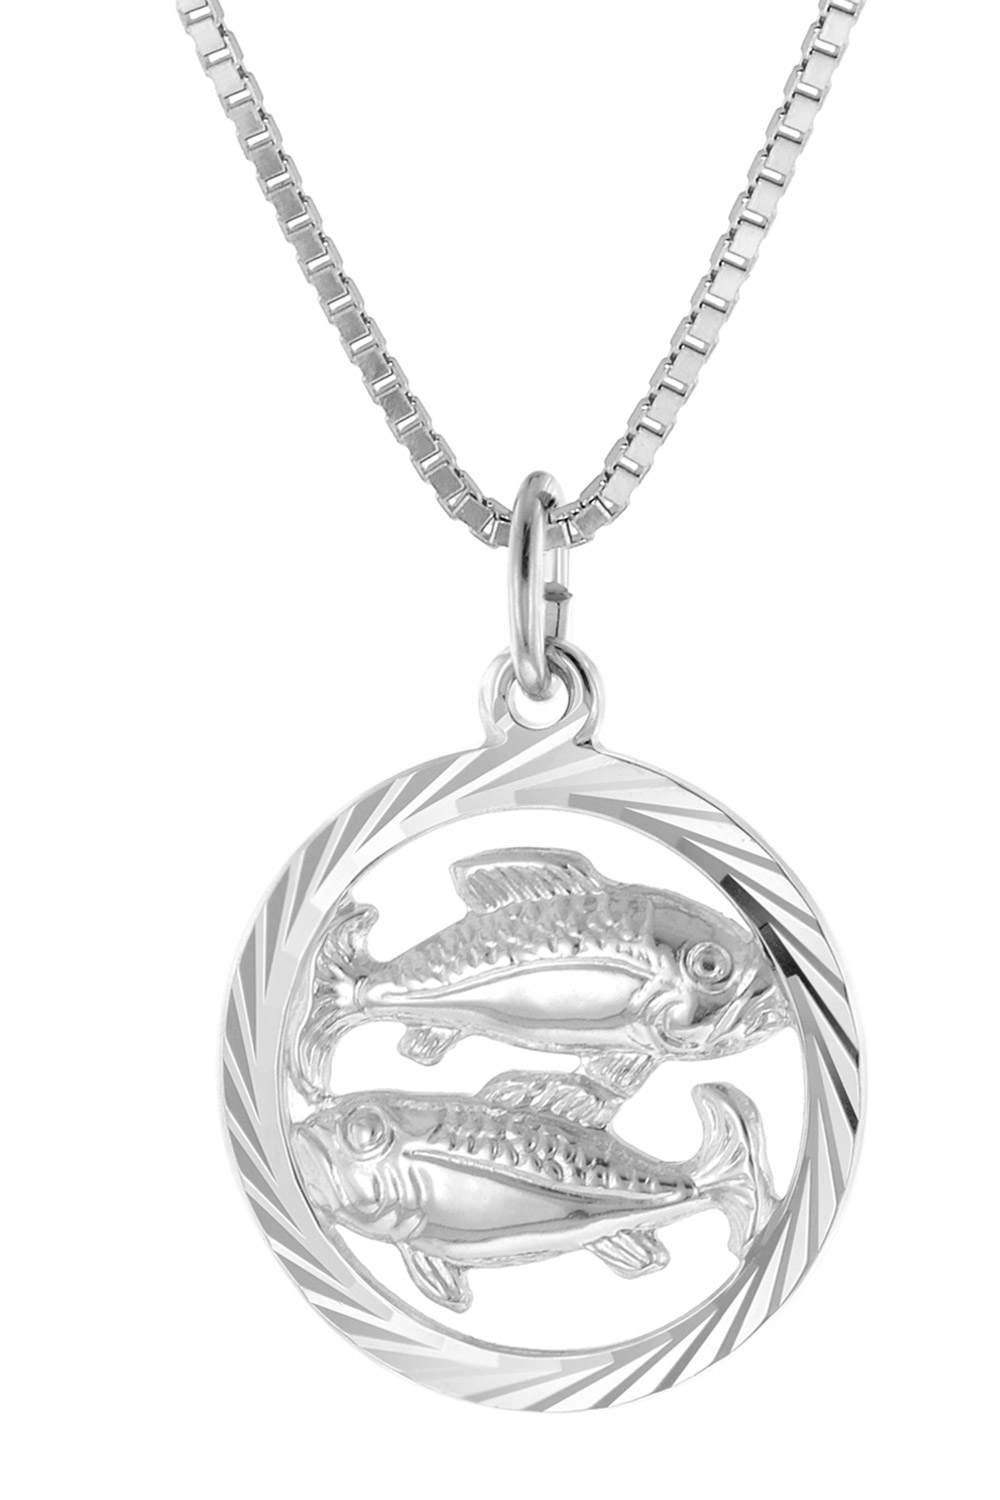 trendor 15360-03 Fische Sternzeichen Halskette Silber 925